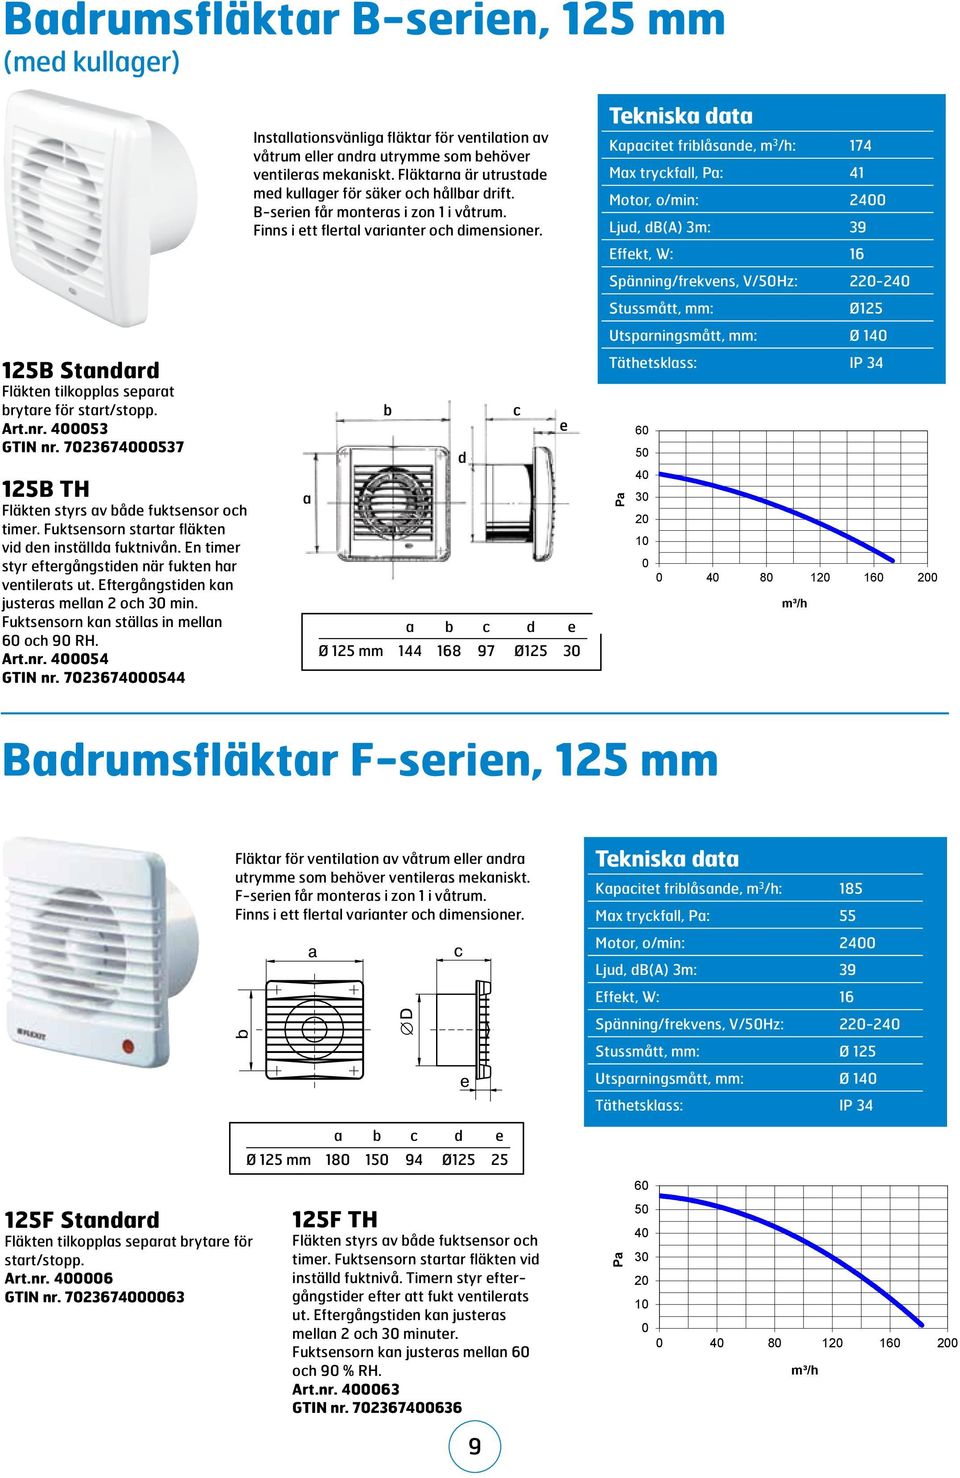 Fuktsensorn kan ställas in mellan 6 och 9 RH. Art.nr. 454 GTIN nr. 723674544 Installationsvänliga fläktar för ventilation av våtrum eller andra utrymme som behöver ventileras mekaniskt.